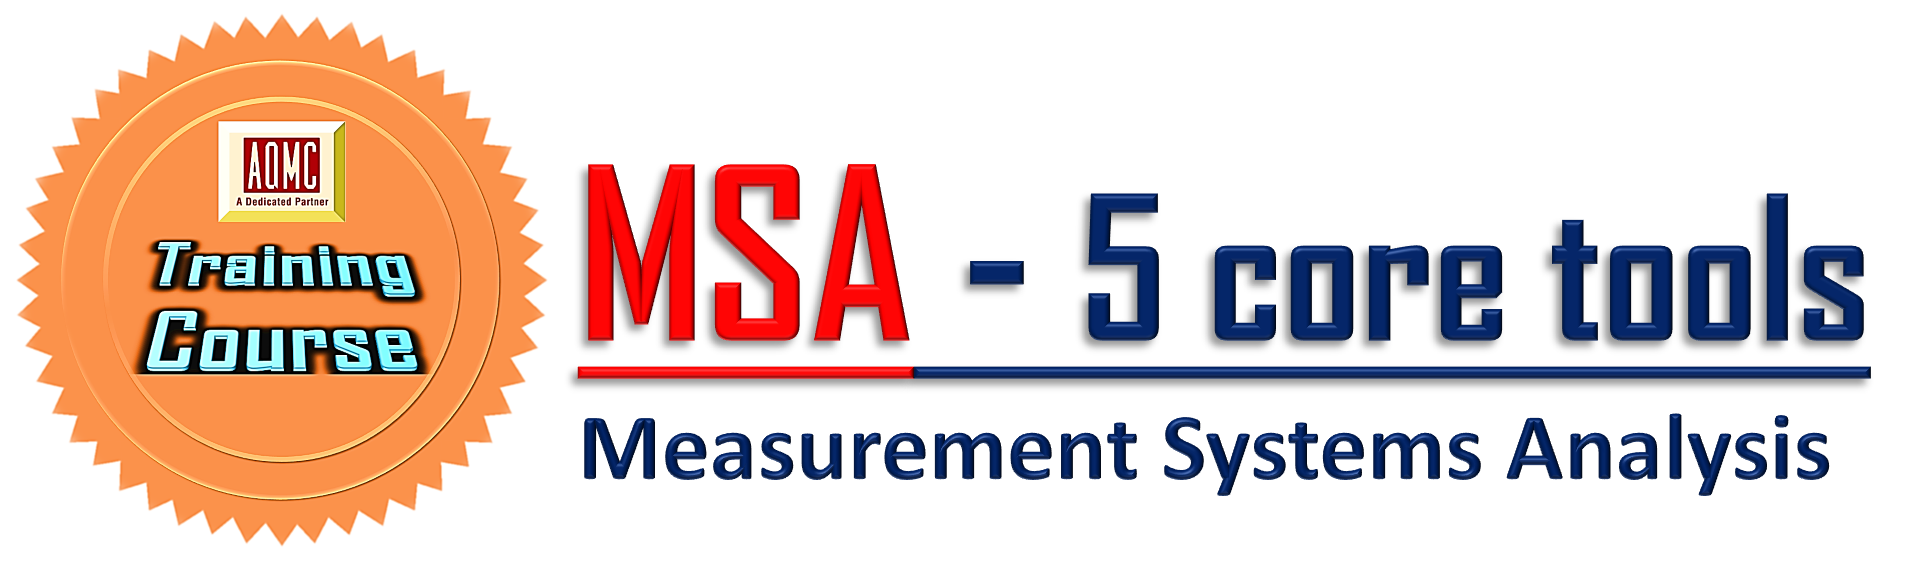 Đào tạo MSA - Phân tích hệ thống đo lường